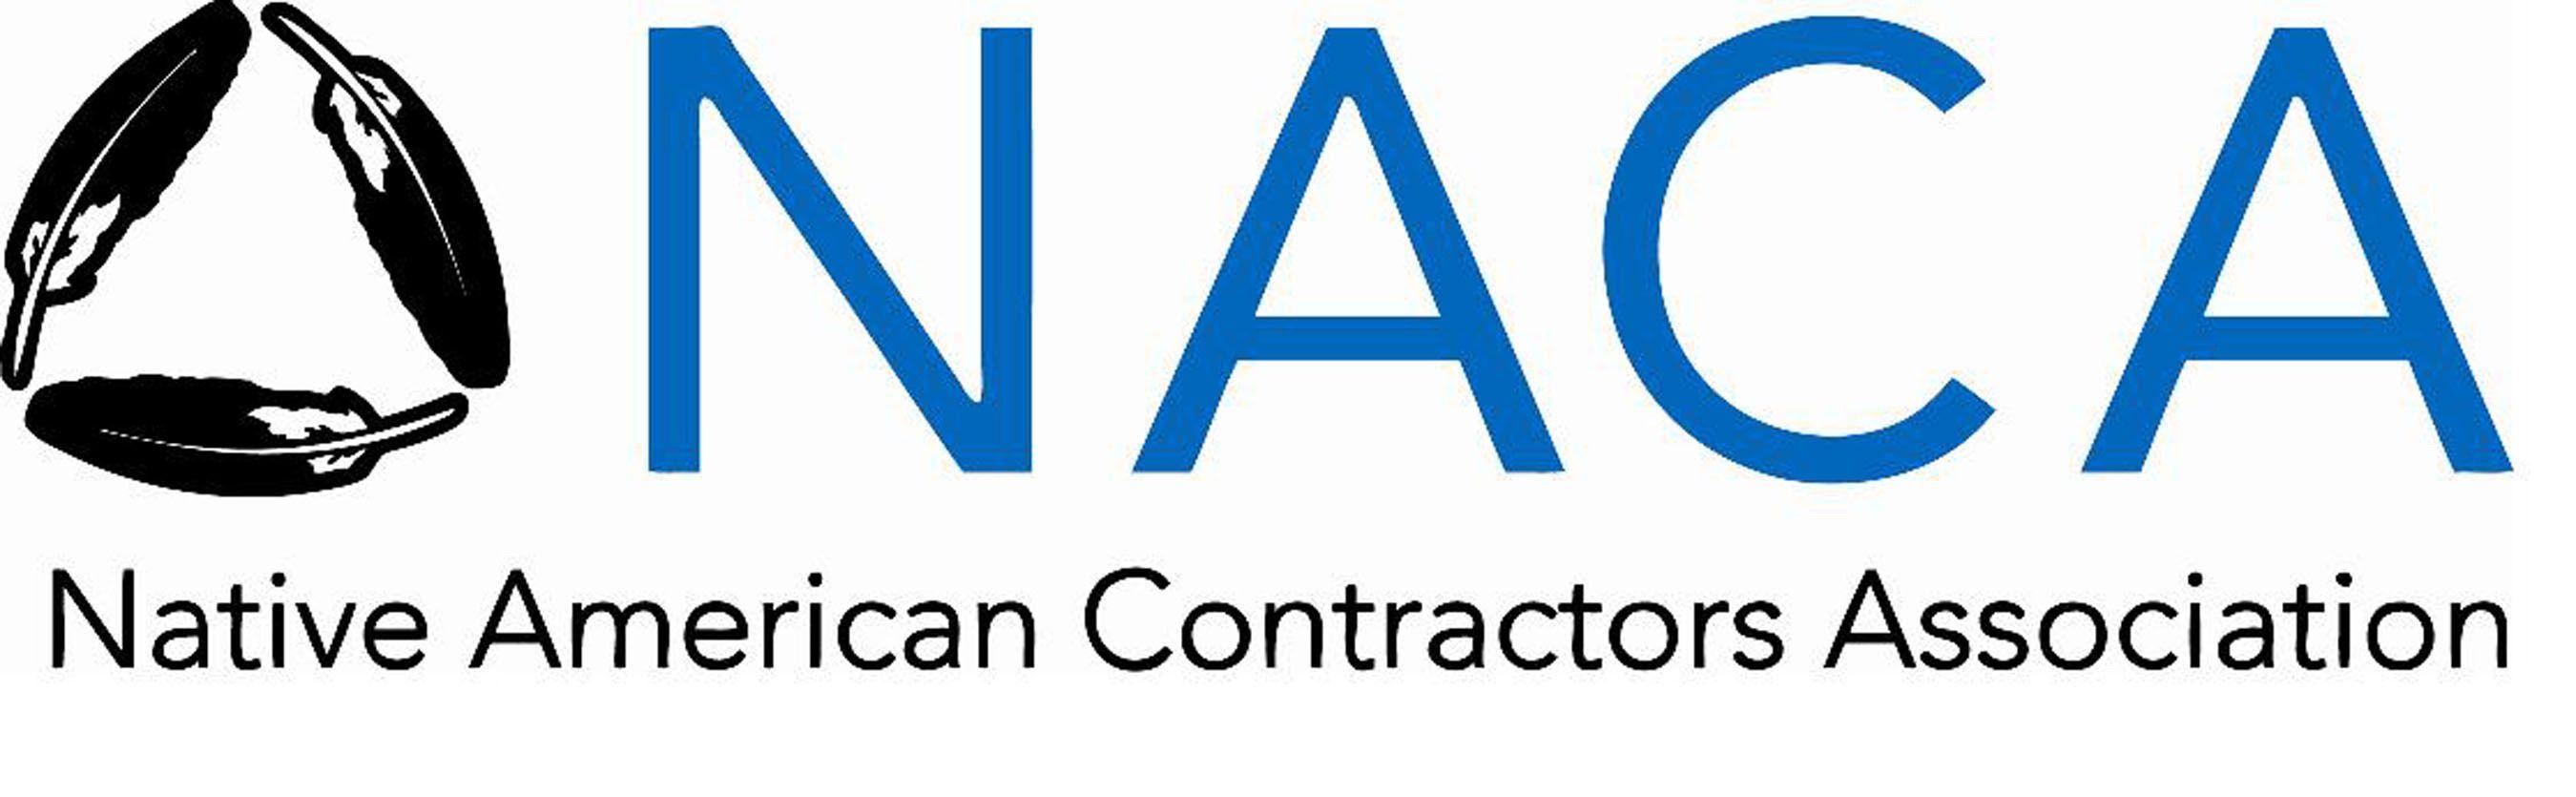 NACA Member Logo - NACA Welcomes New Executive Director